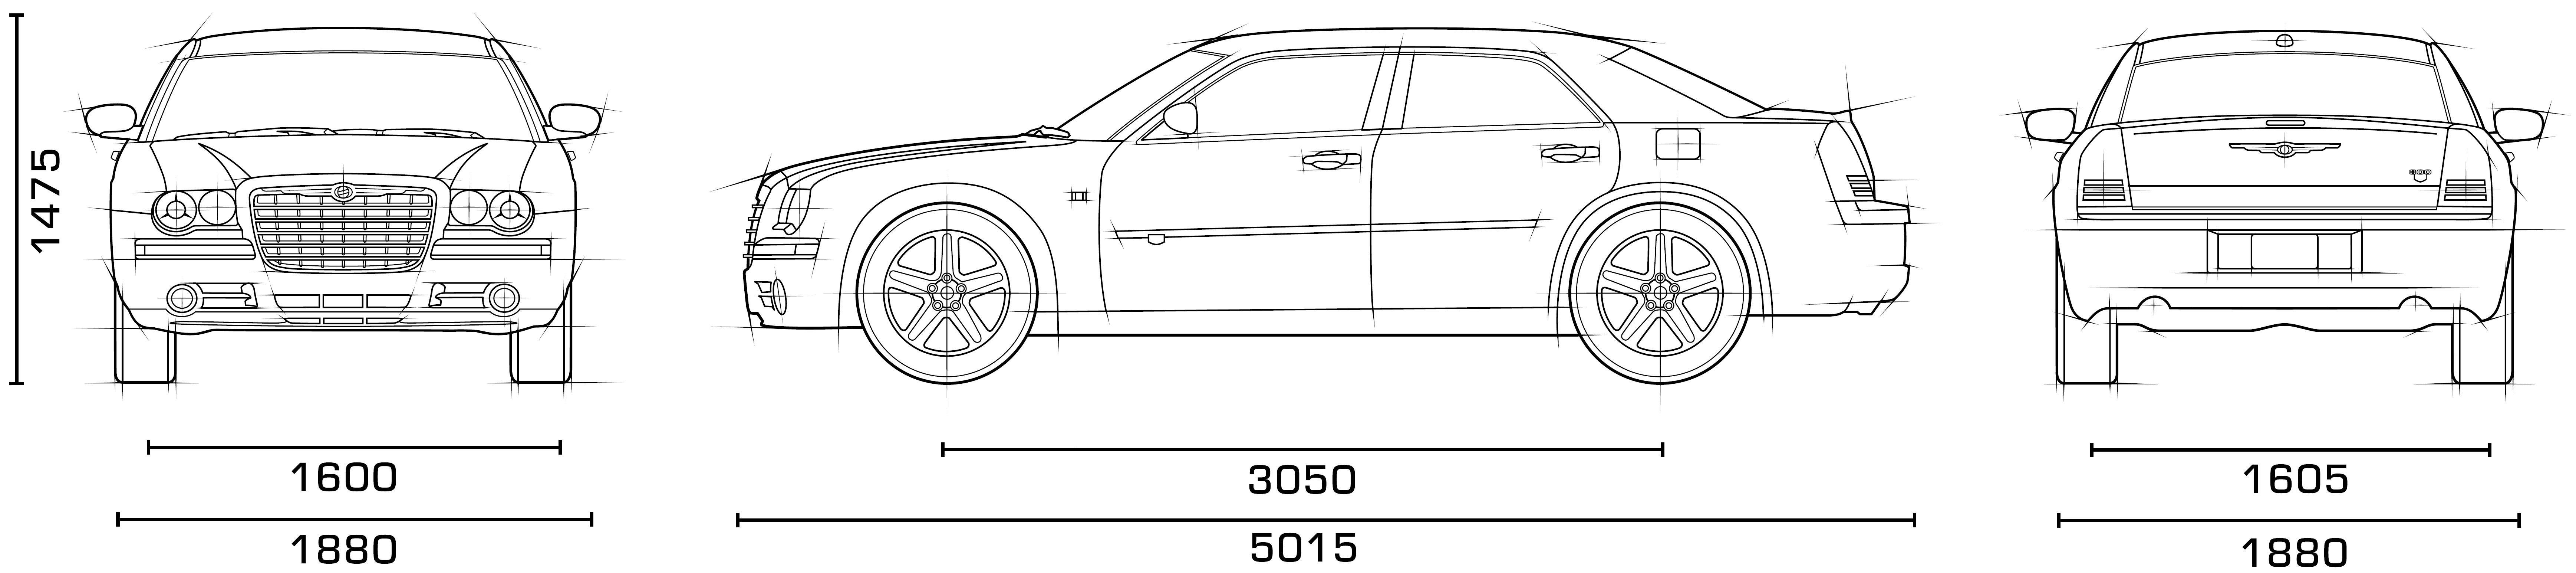 Chrysler 300C blueprint